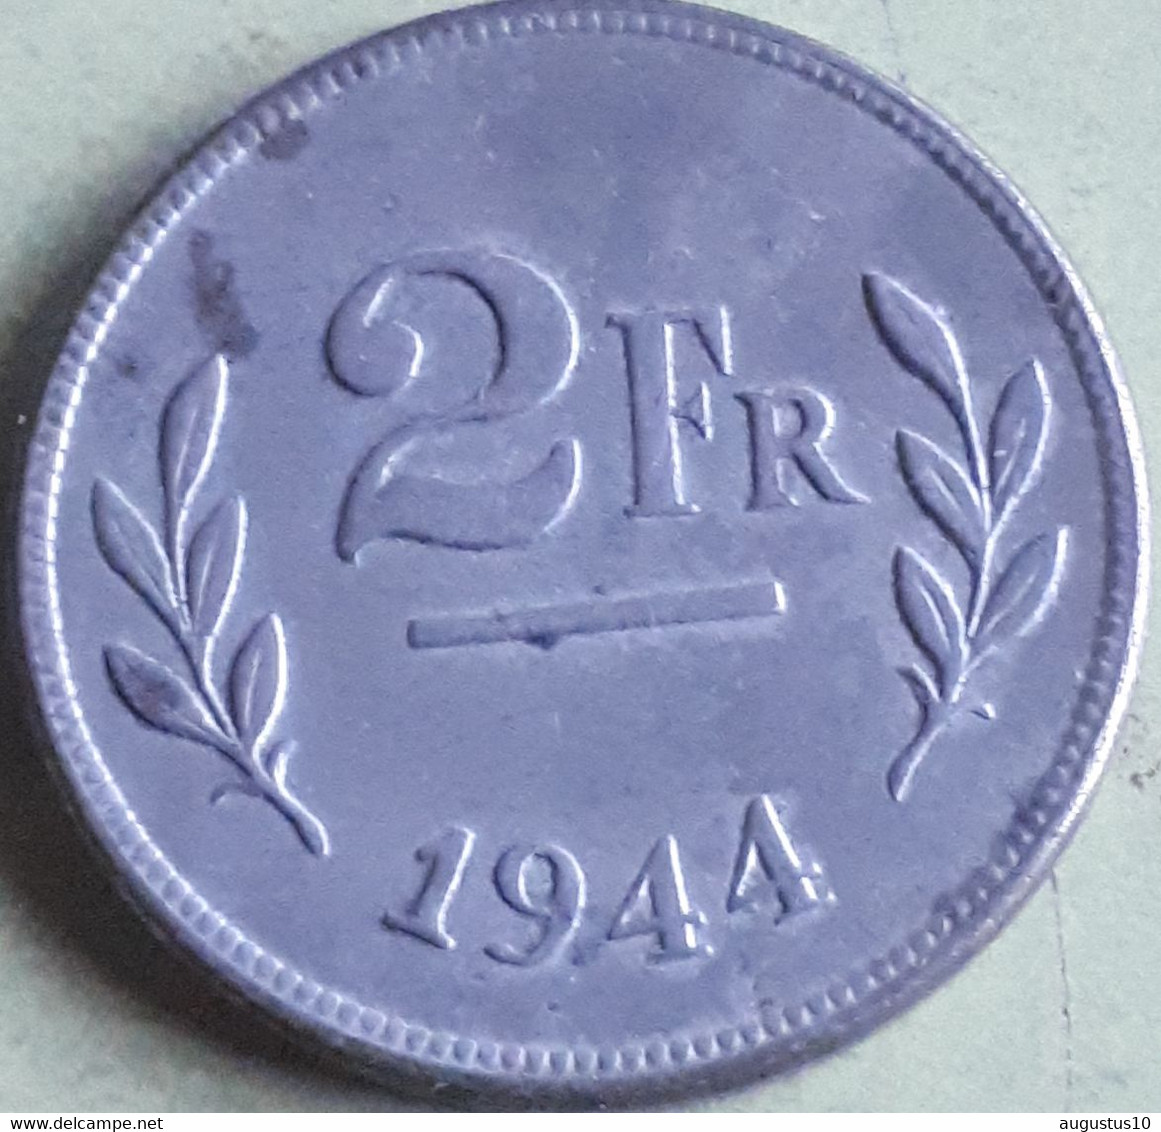 BELGIE : 2 FRANCSS 1944 Km 133 - 2 Francs